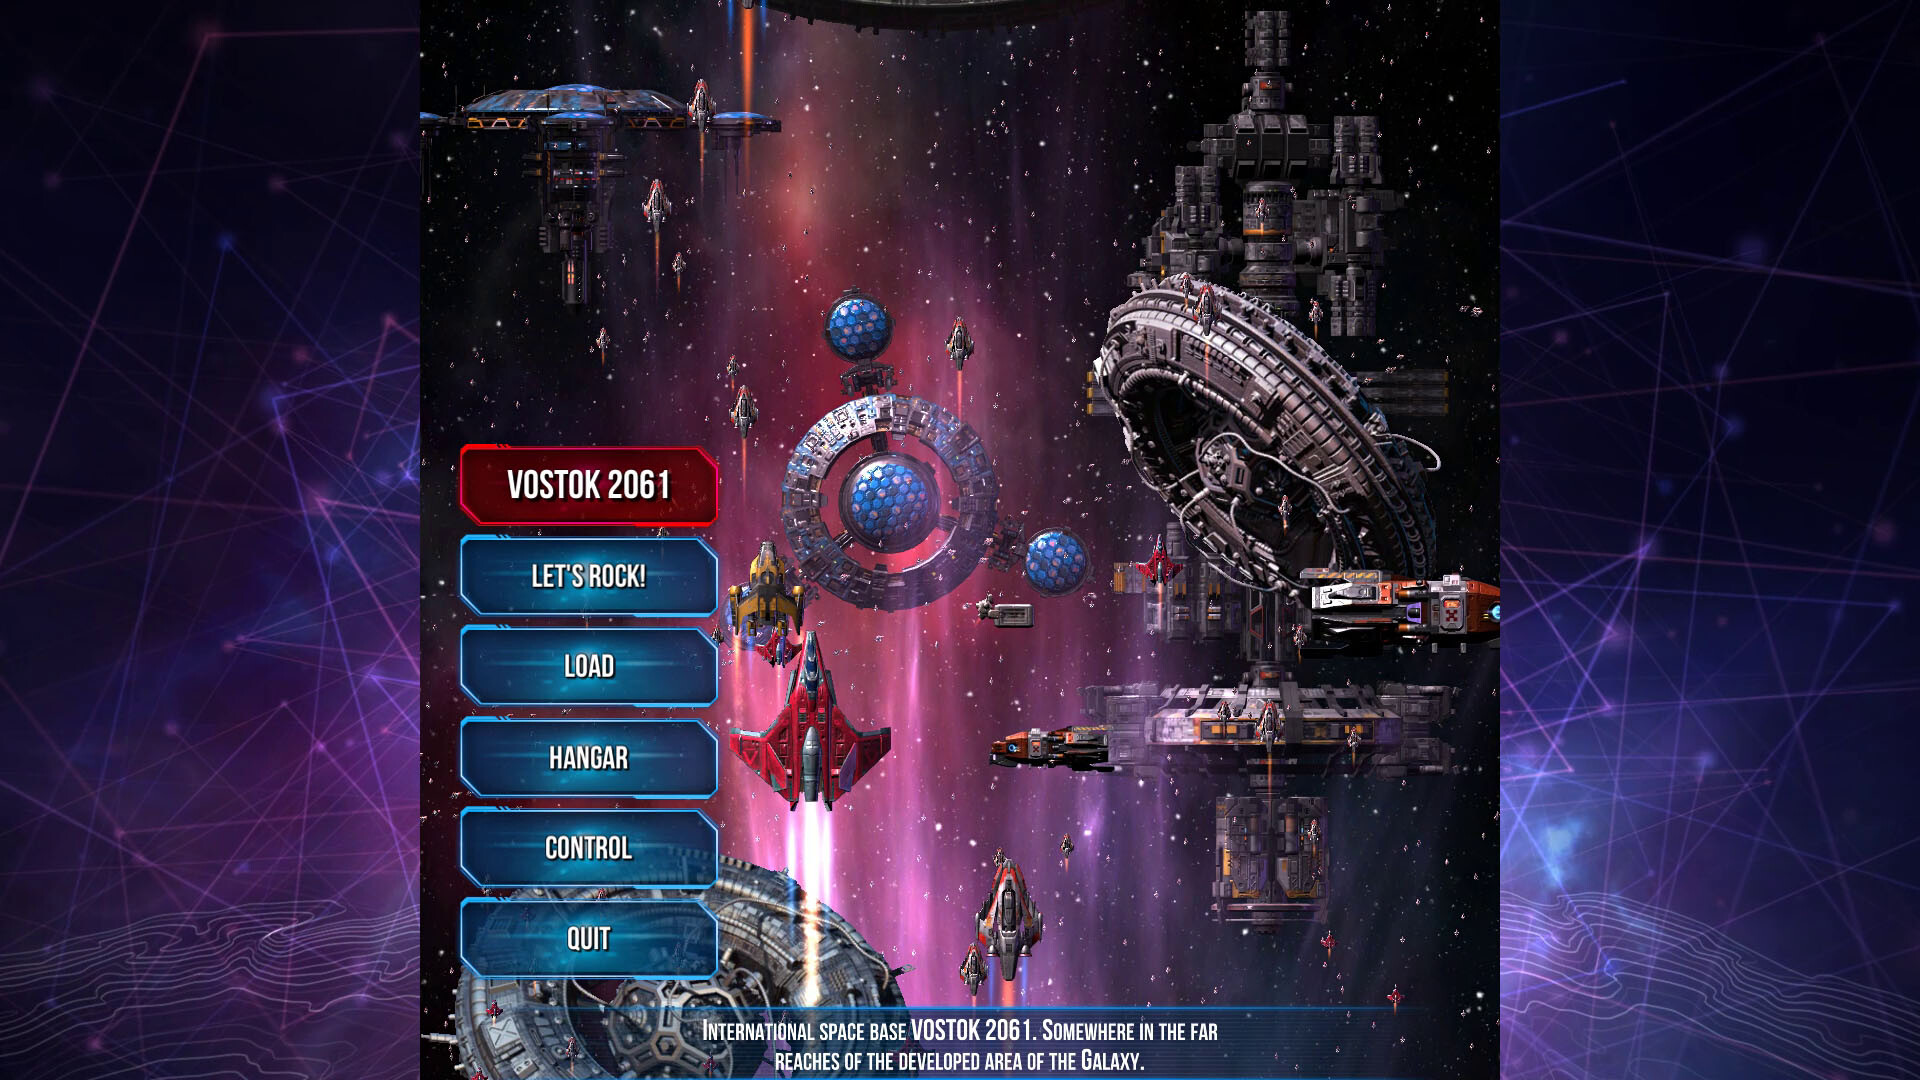 Vostok 2061 Free Download